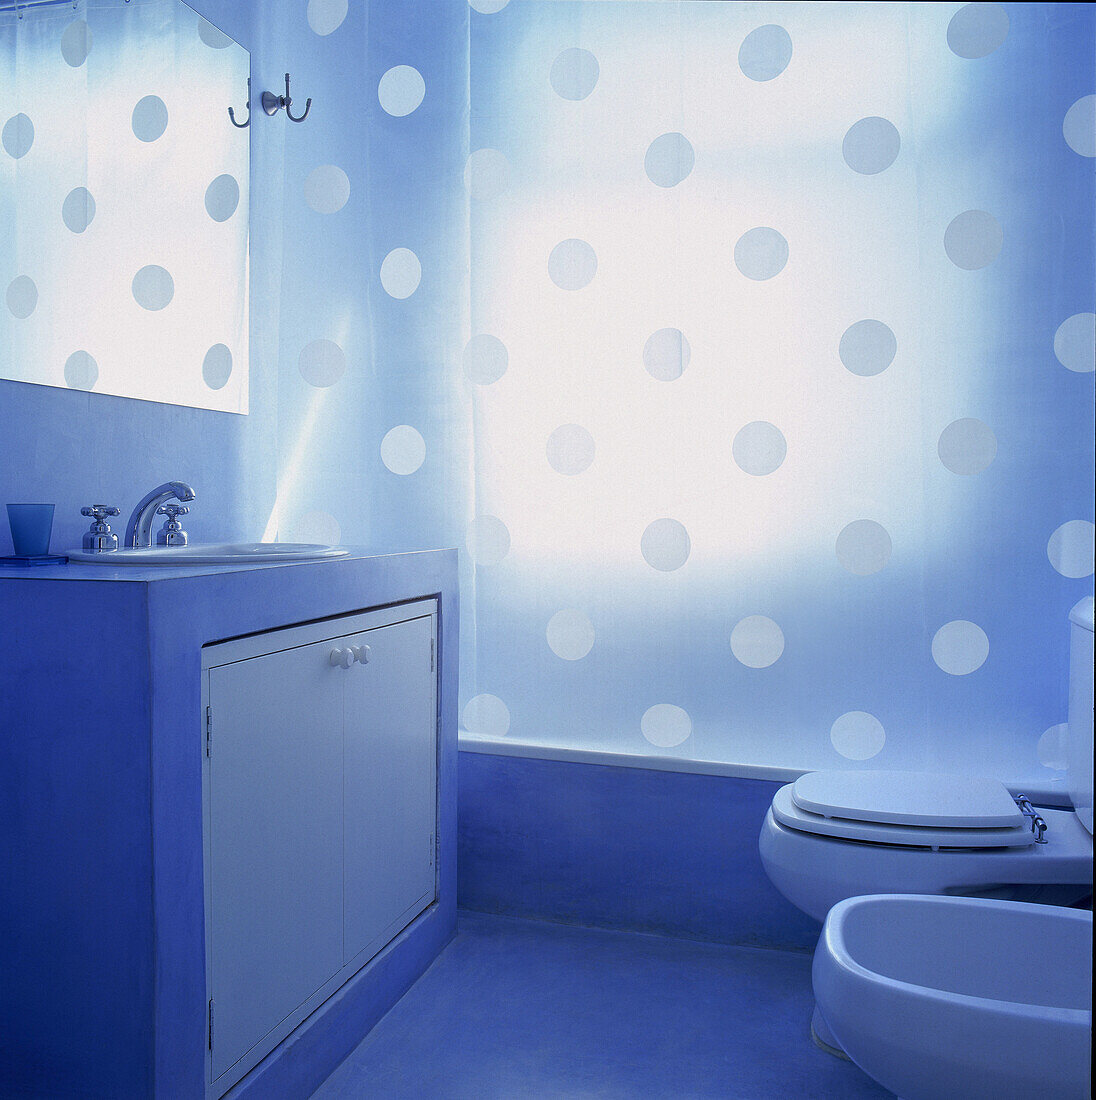 Badezimmer mit Waschbecken in Betonstruktur mit lichtdurchlässigem Duschvorhang